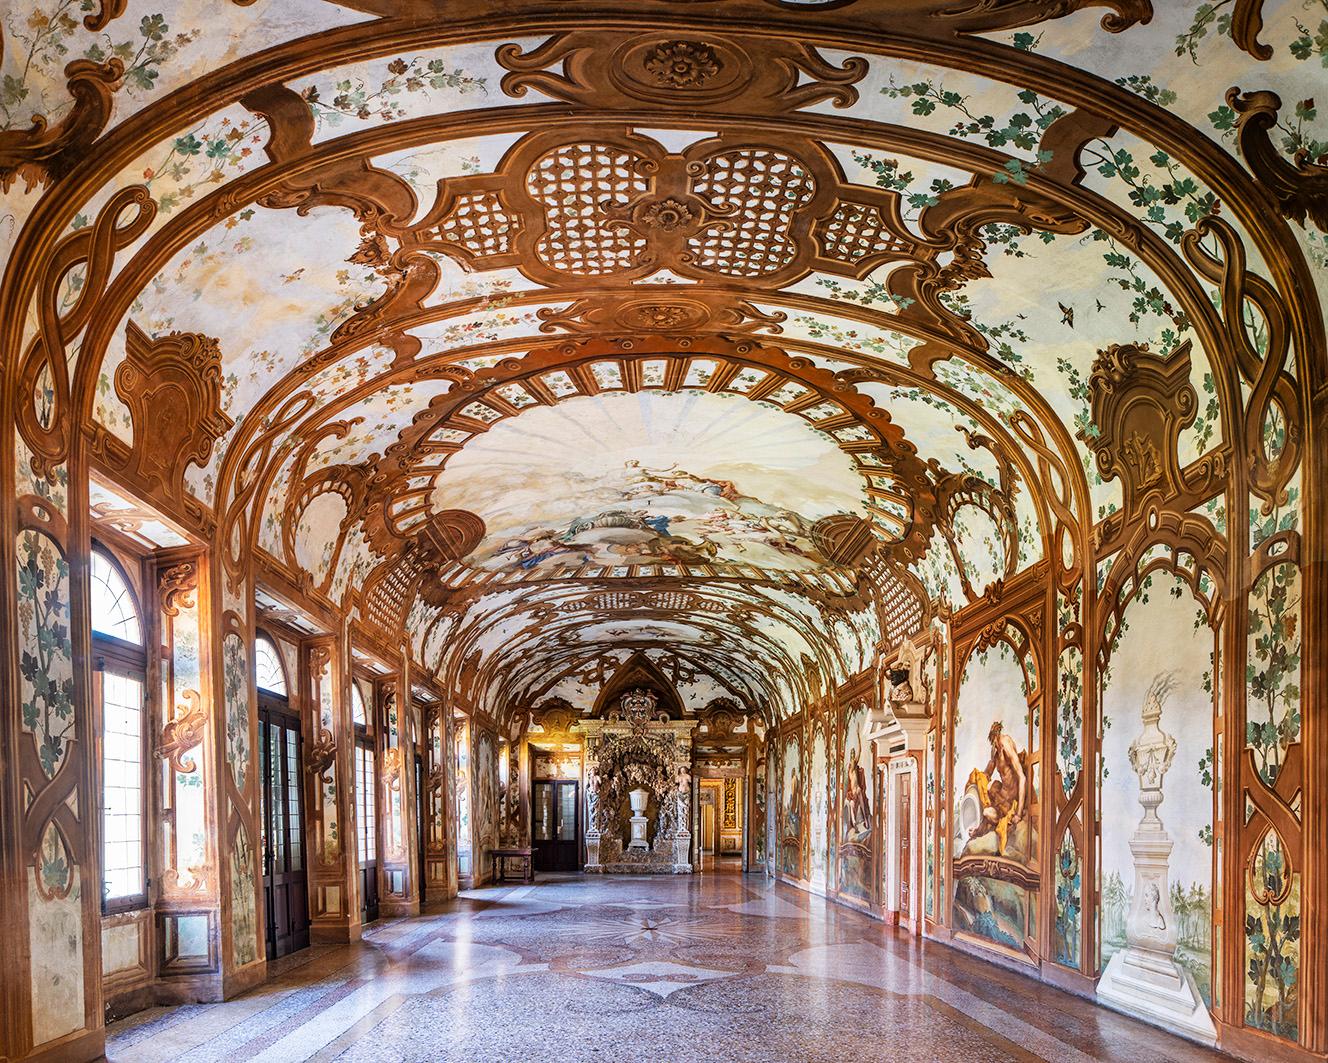 Reinhard Görner Still-Life Photograph – Sala dei Fiumi I (Halle der Flüsse), Herzogspalast von Mantua